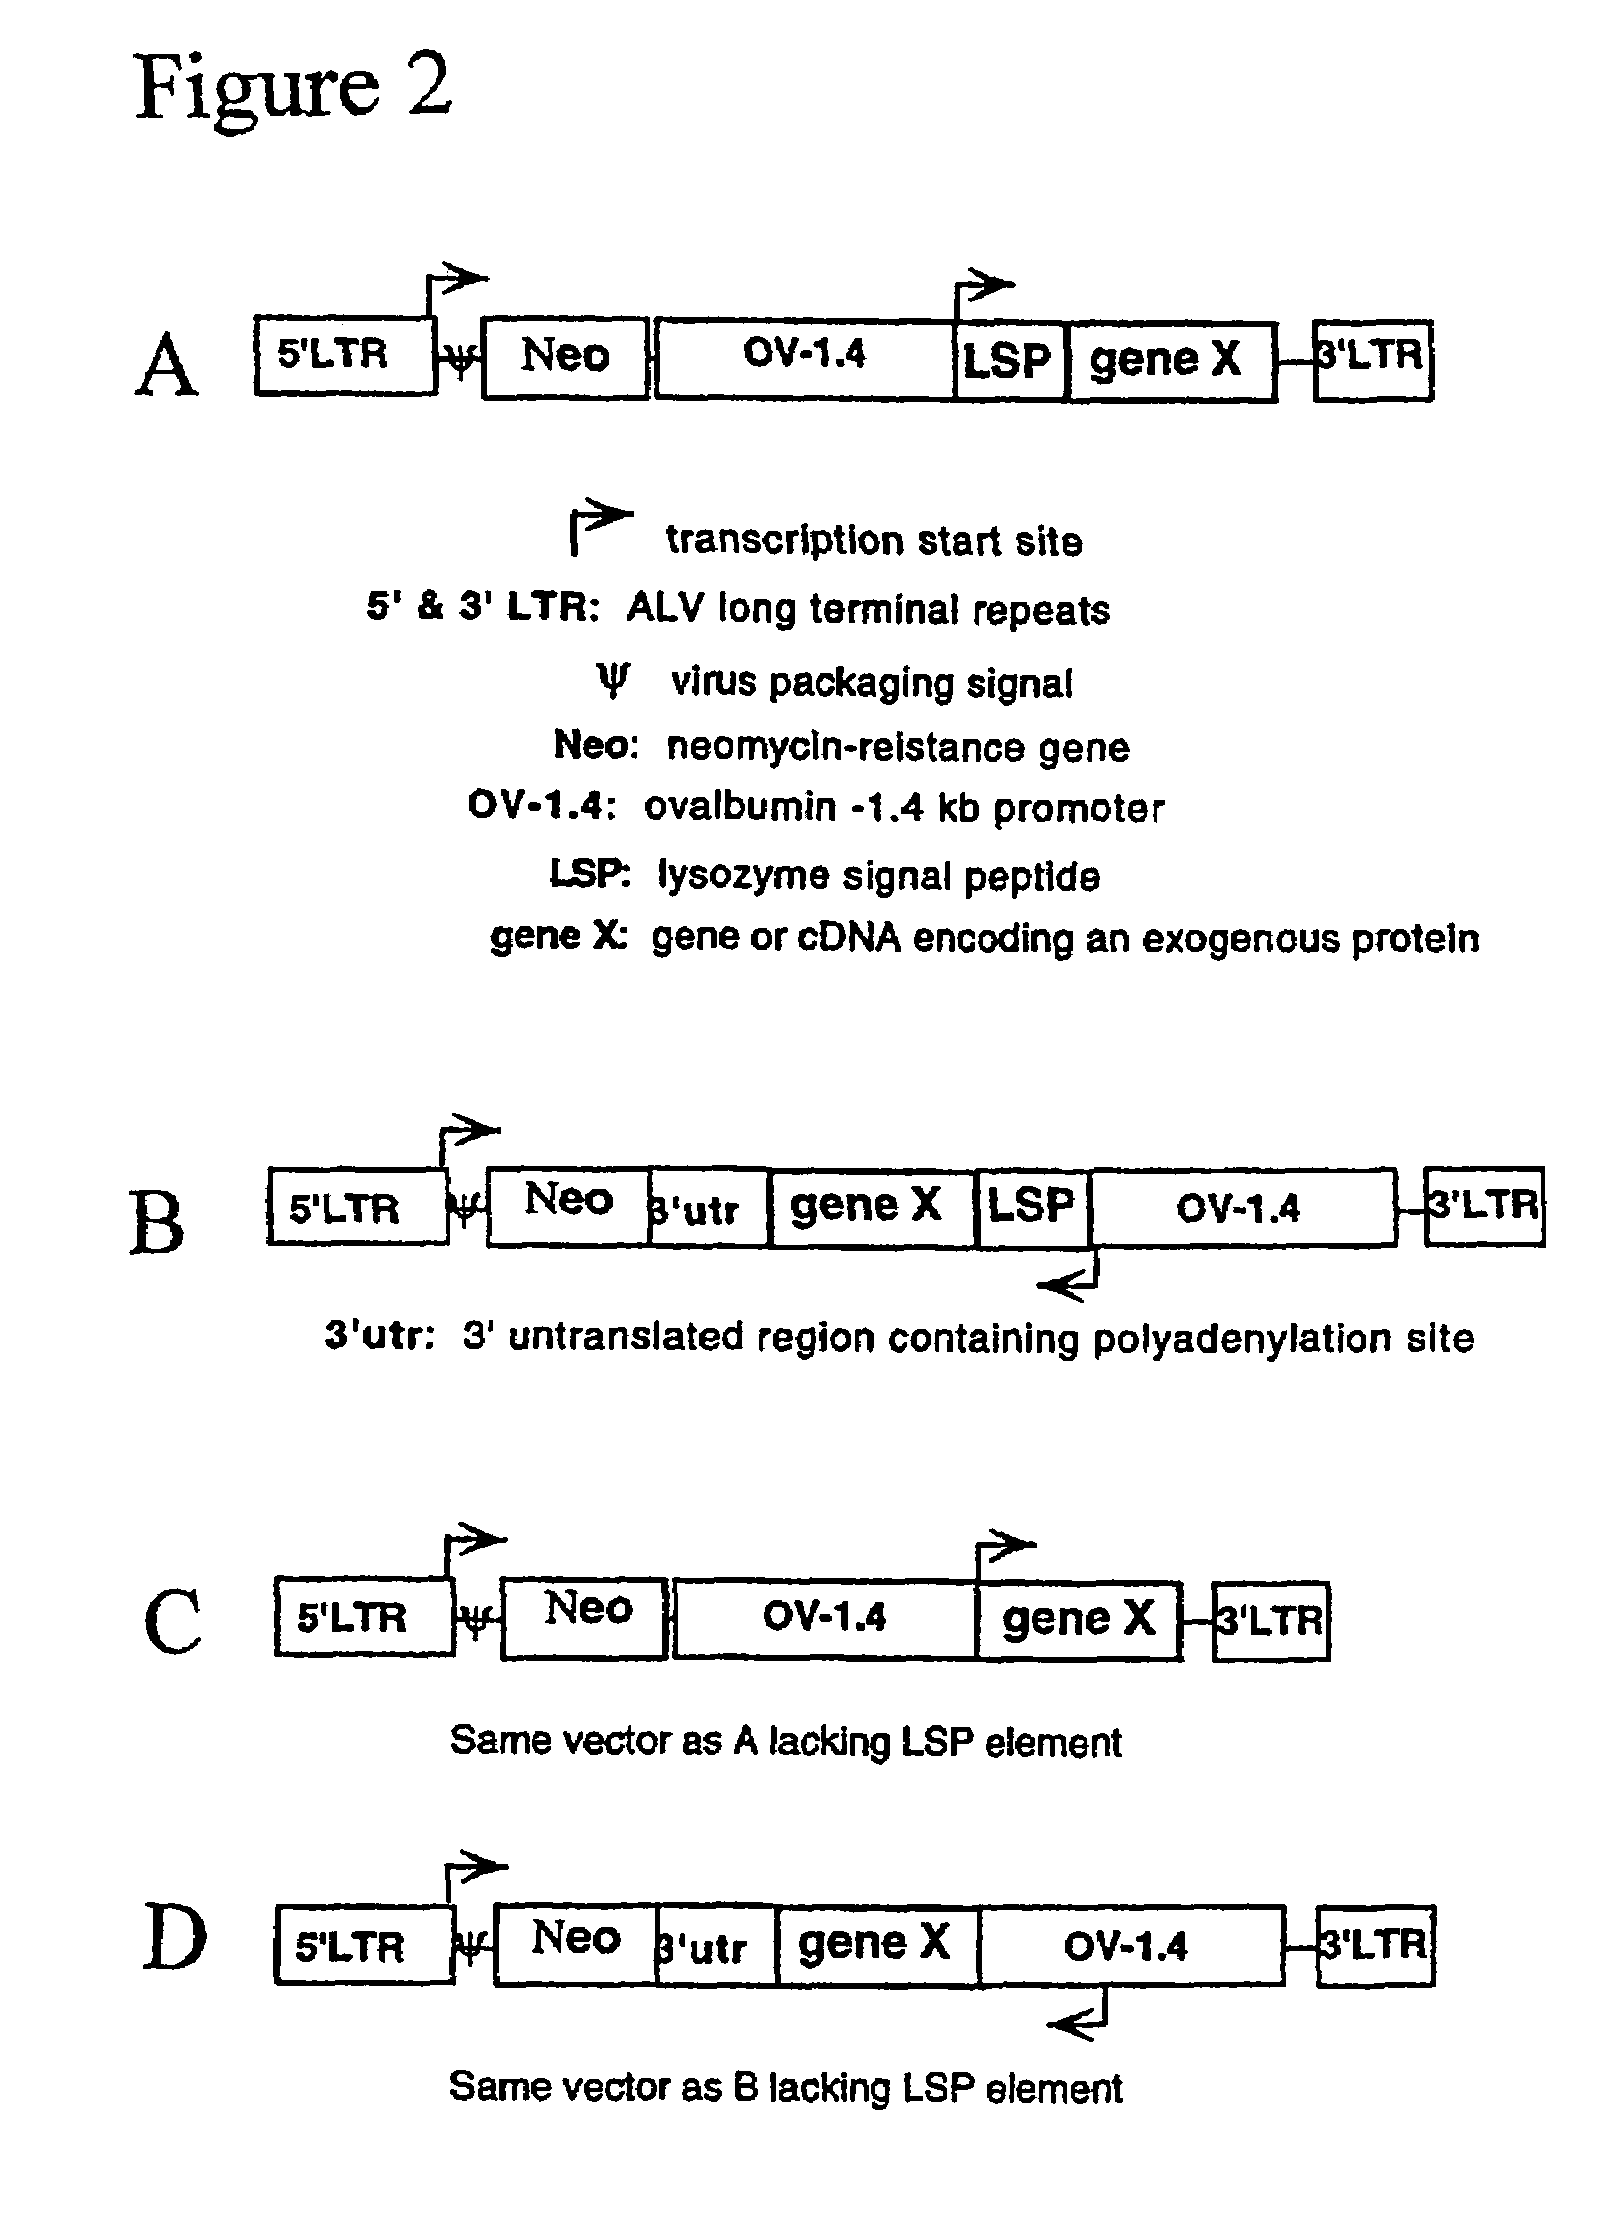 Avians expressing heterologous protein